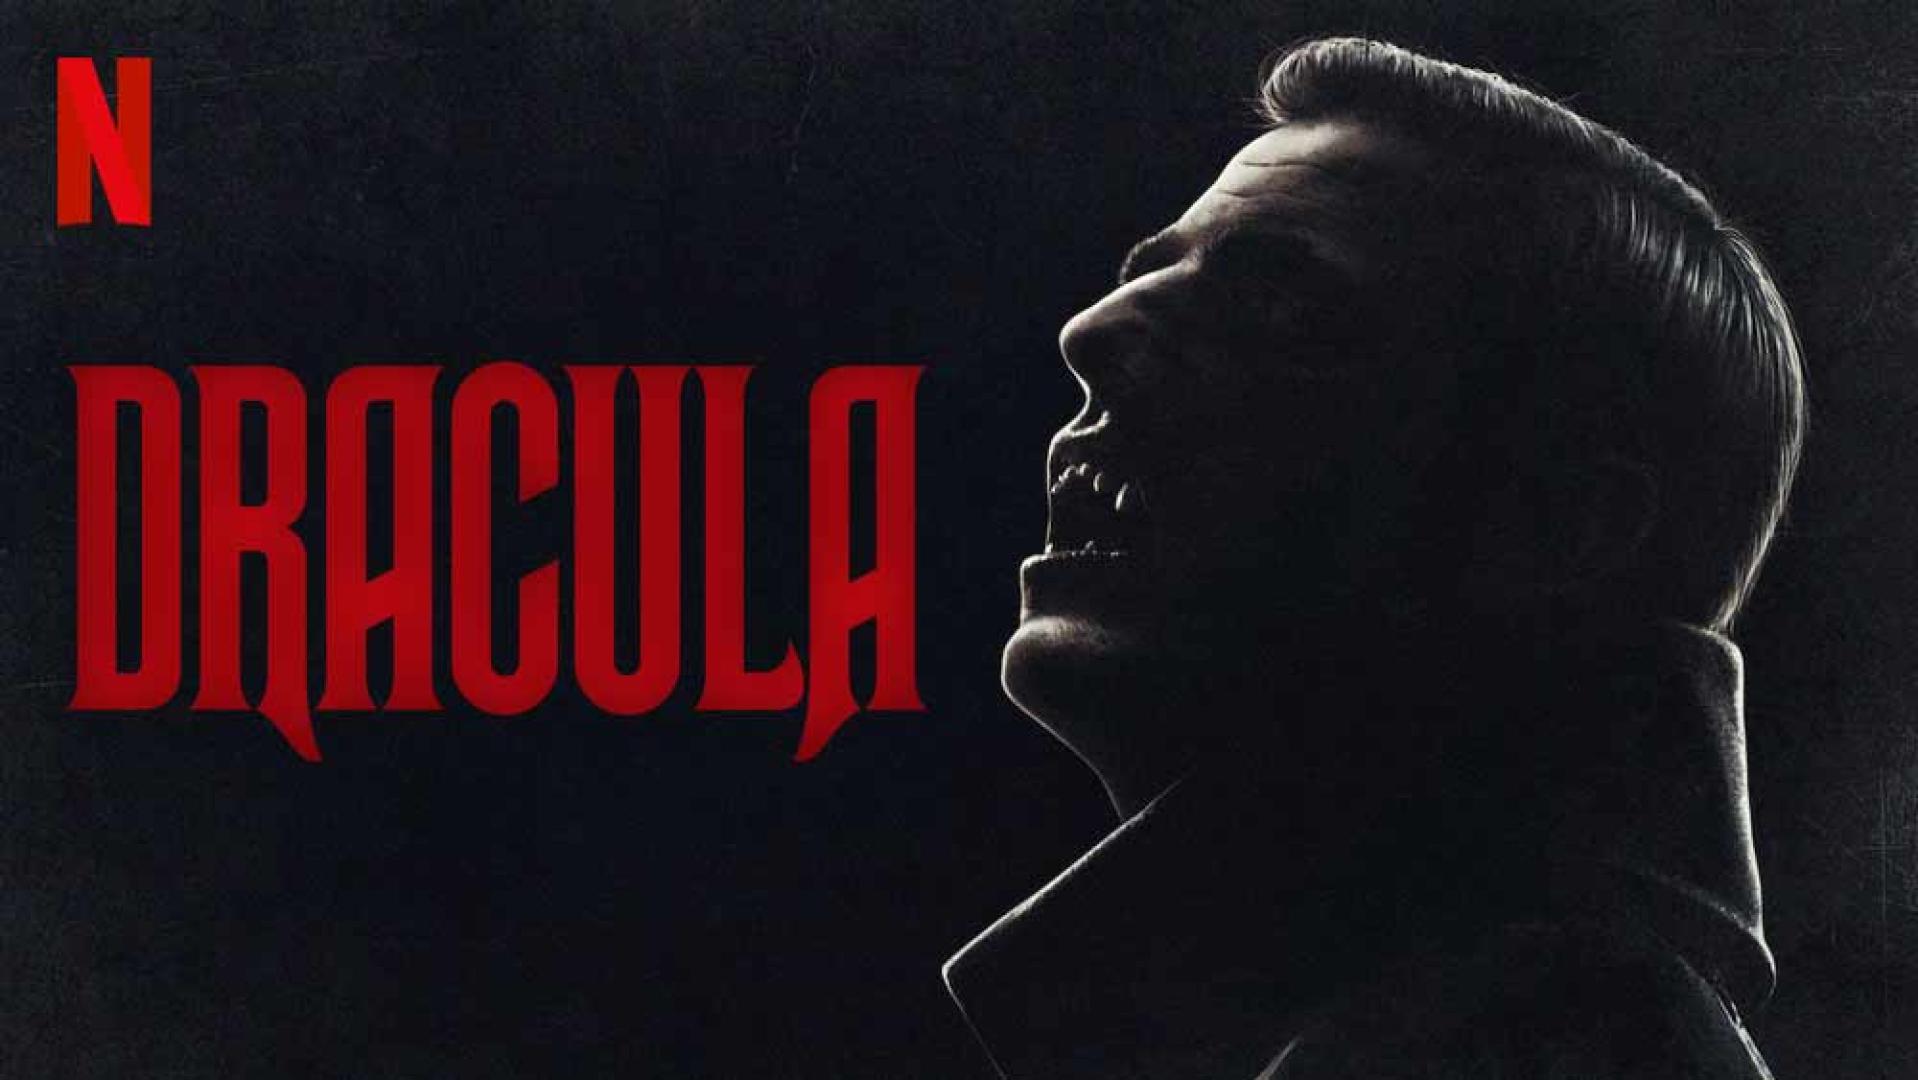 Dracula sorozat értékelője